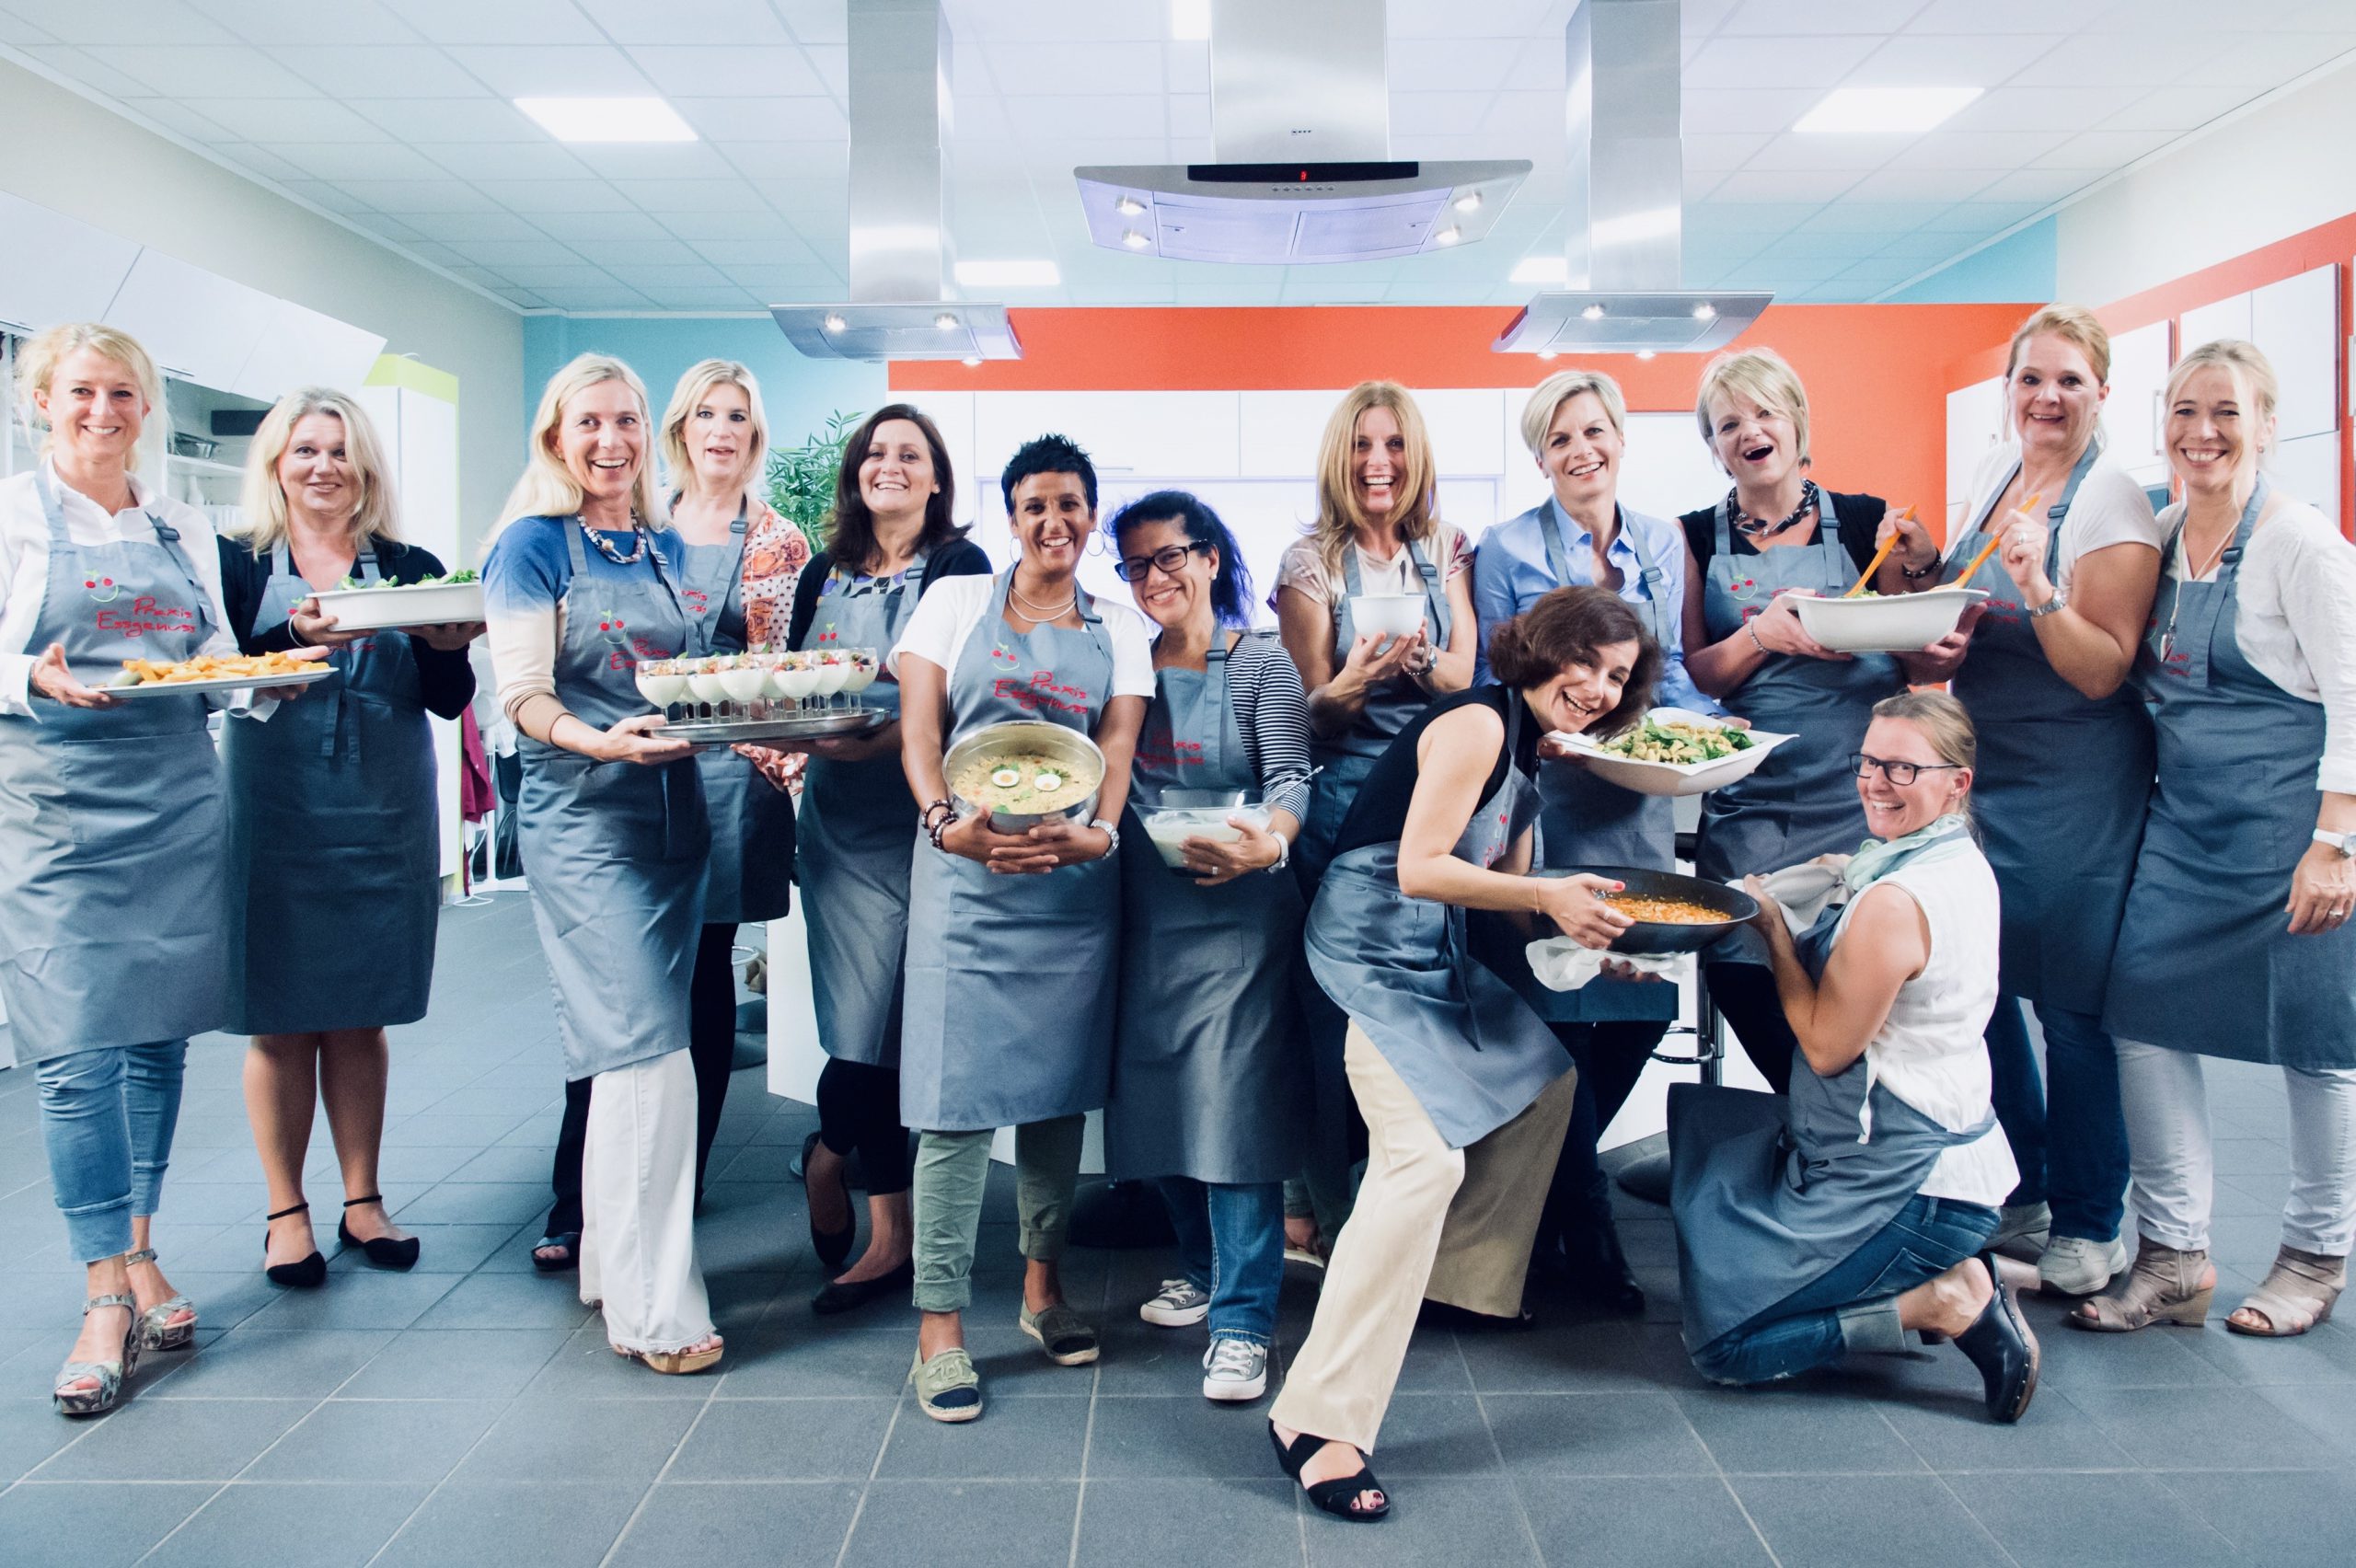 Eine Gruppe von Frauen in Praxis Essgenuss Schürze in den Hoster Küchenstudios in Krefeld. Die Frauen halten unterschiedliche, selbst zubereitete Lebensmittel in den Händen und lachen.